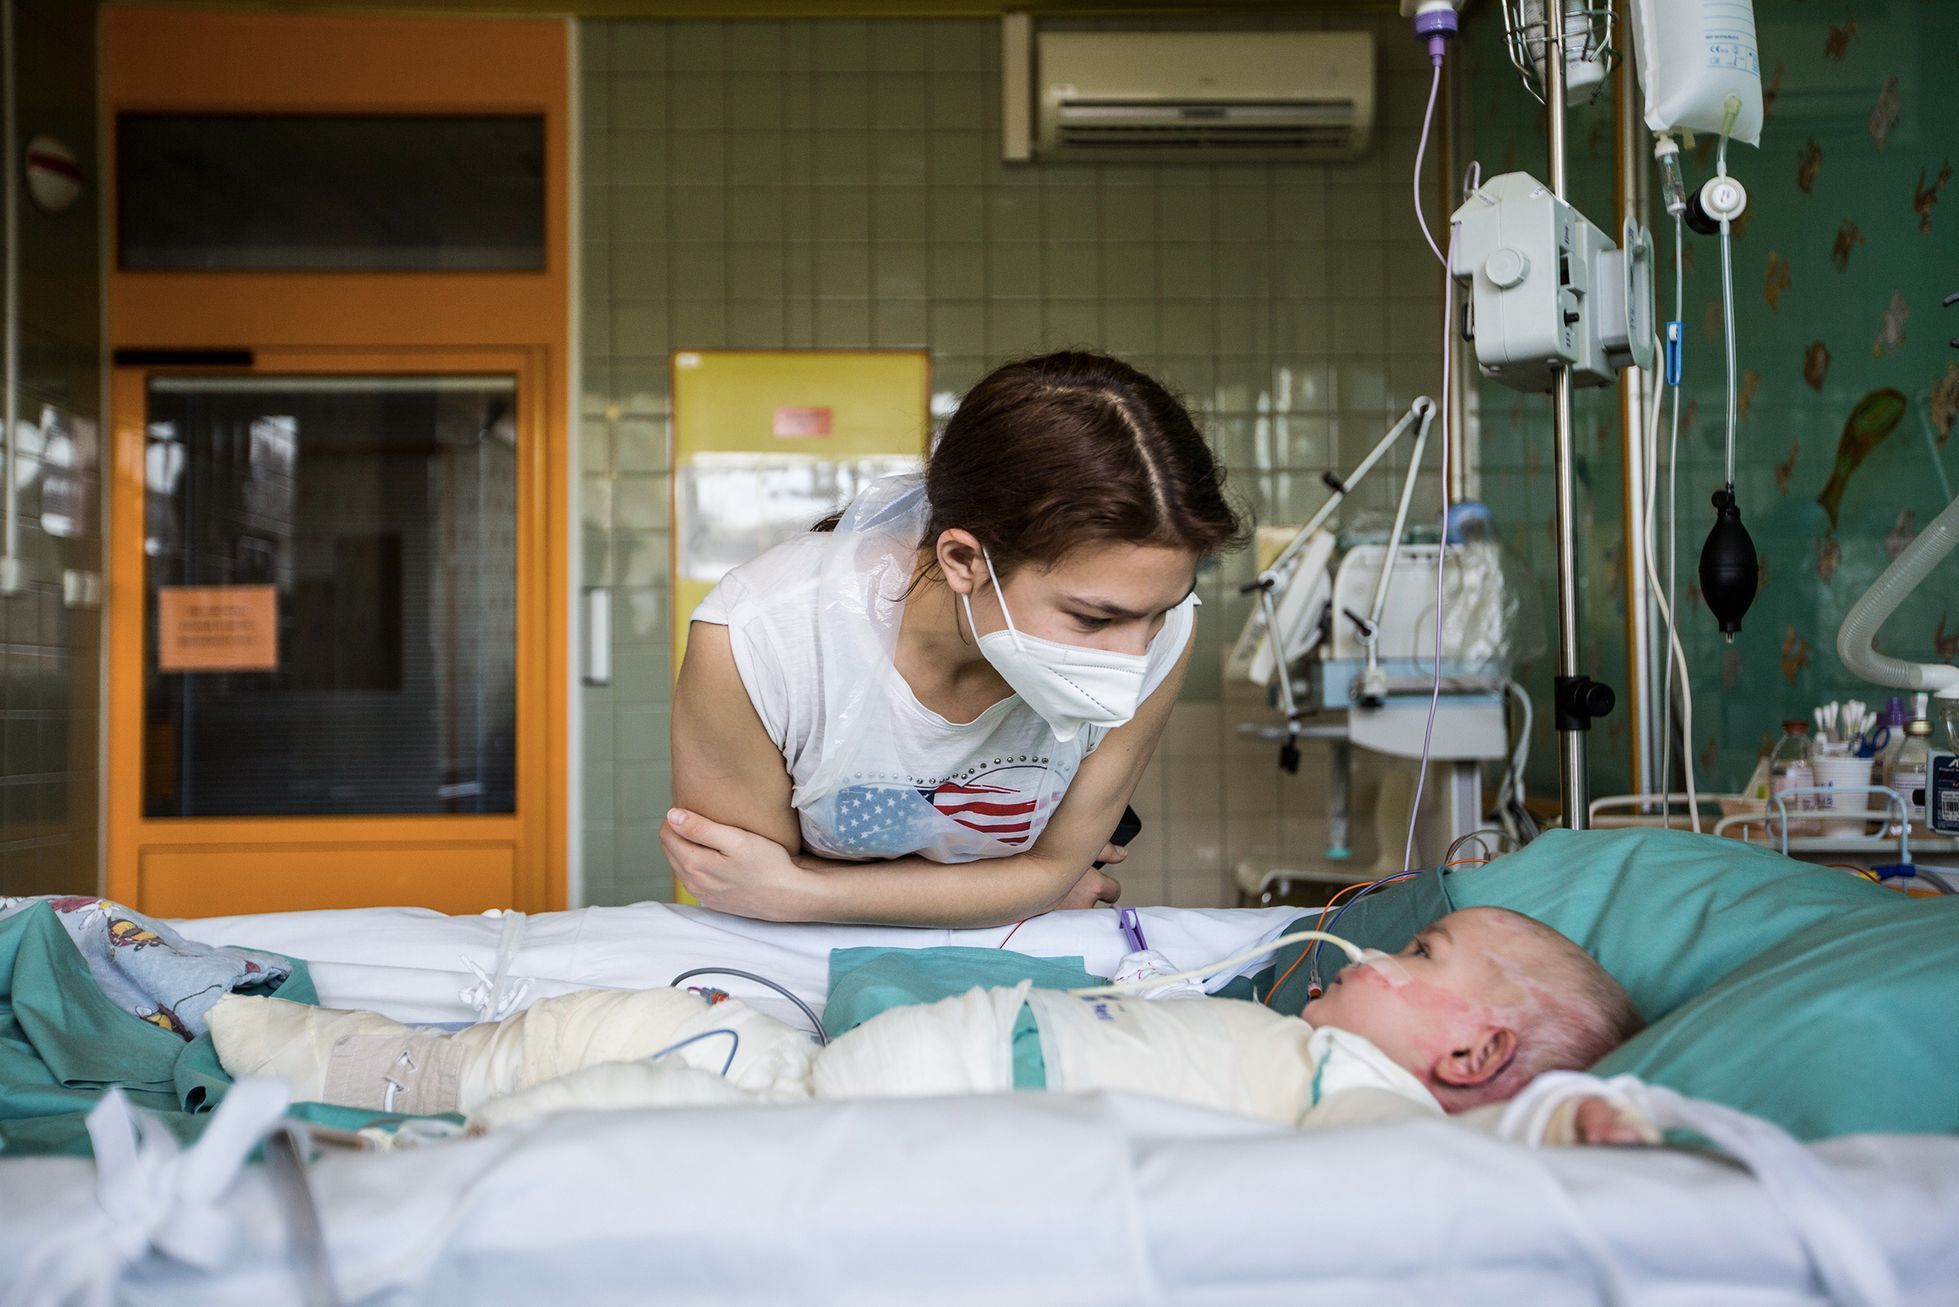 Julie popálená holčička ukrajina válka nemocnice